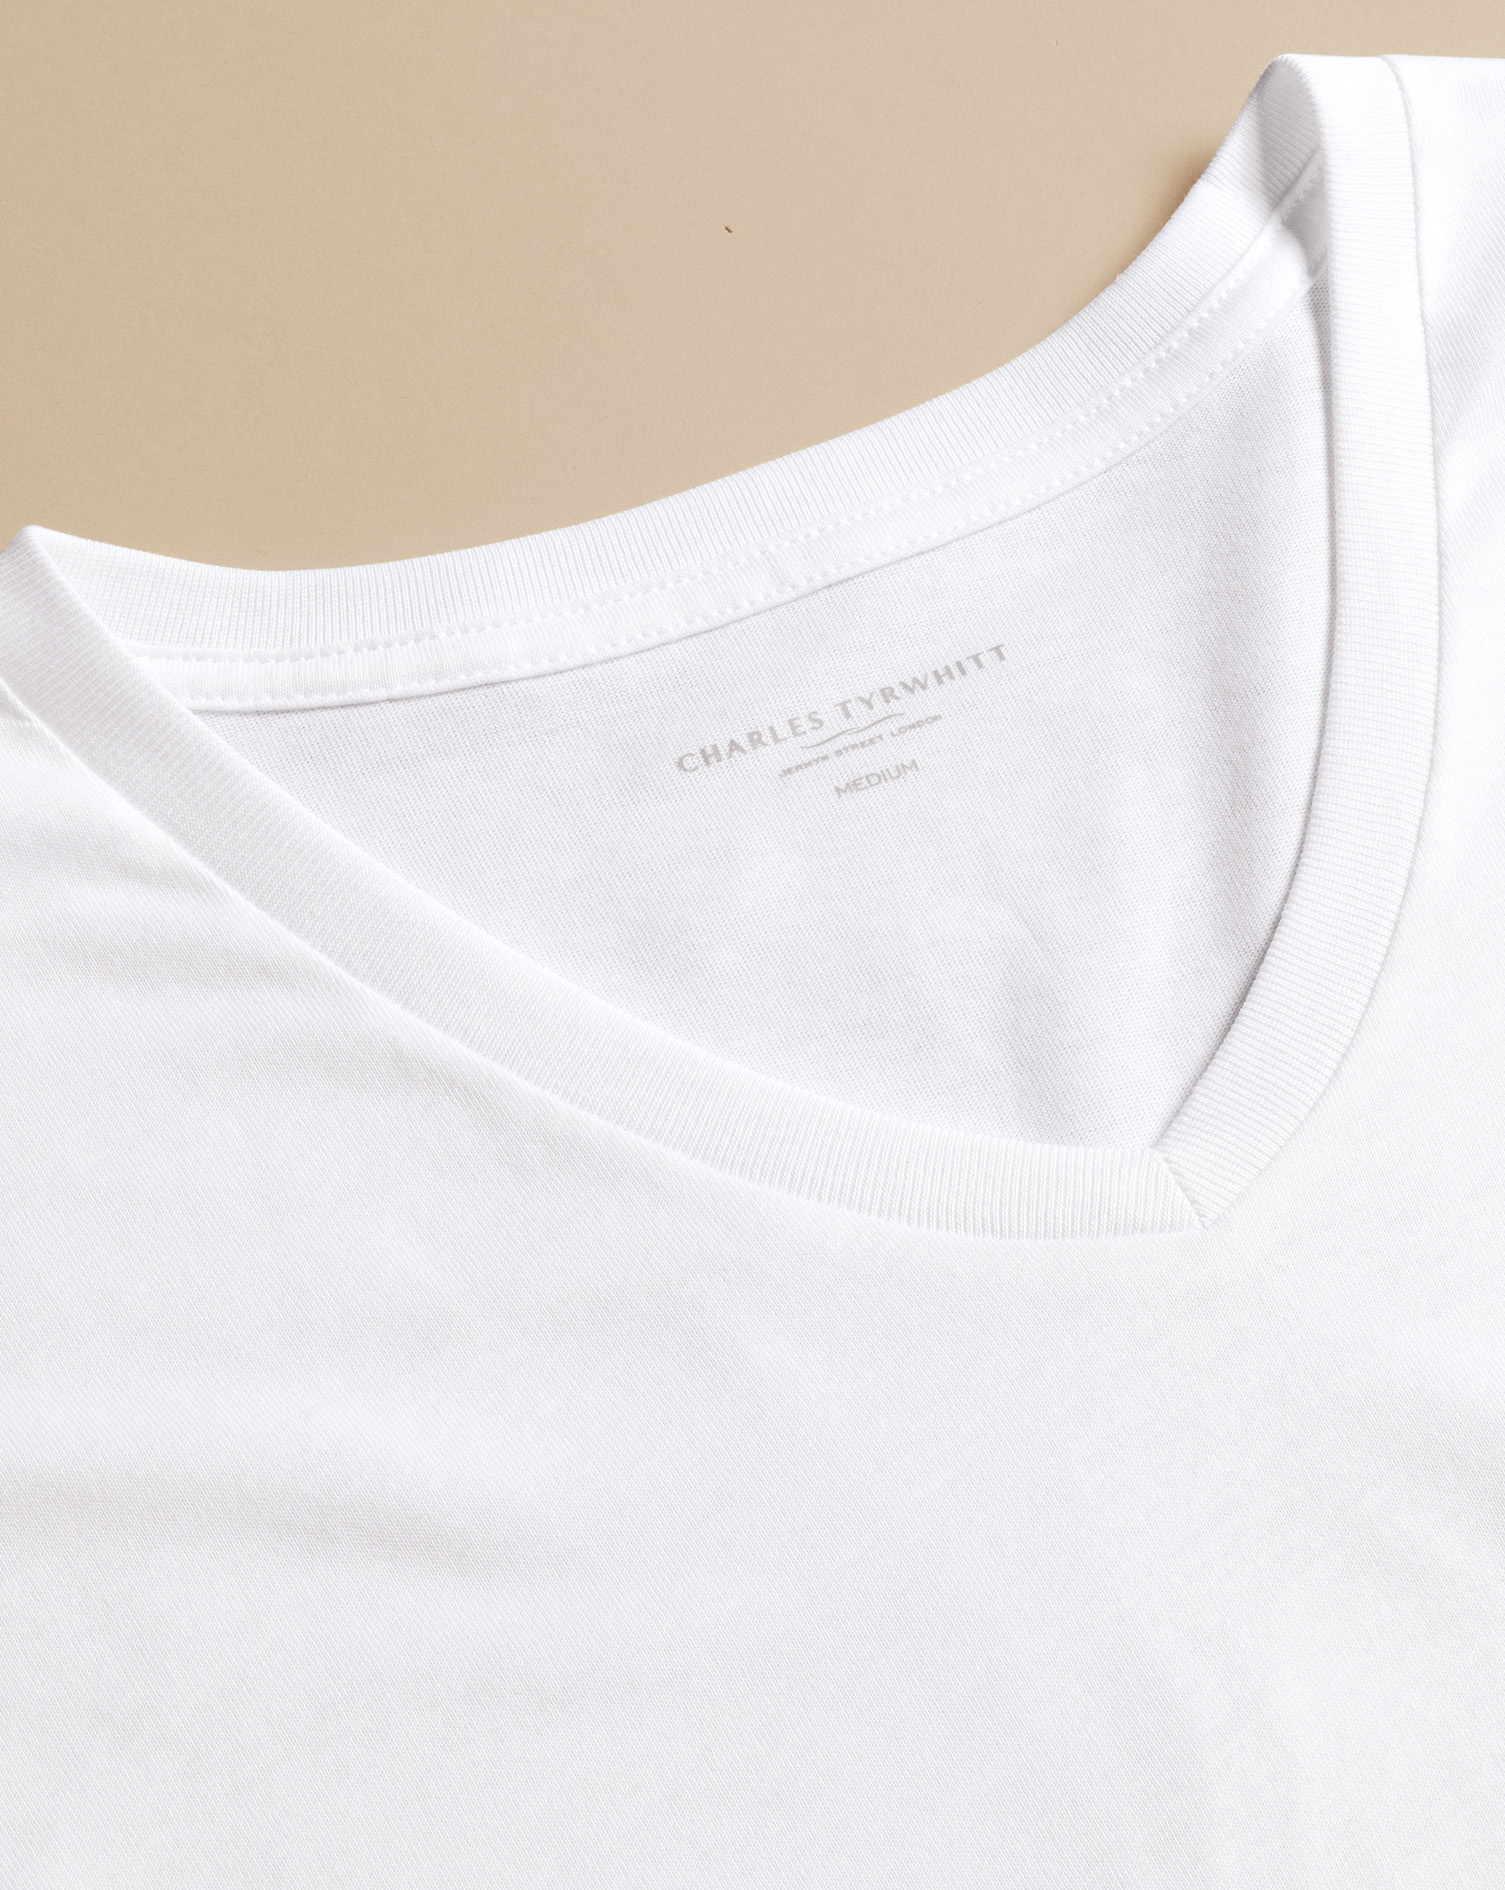 Men's Charles Tyrwhitt 2 Pack V-Neck T-Shirt - White Size Large Cotton
